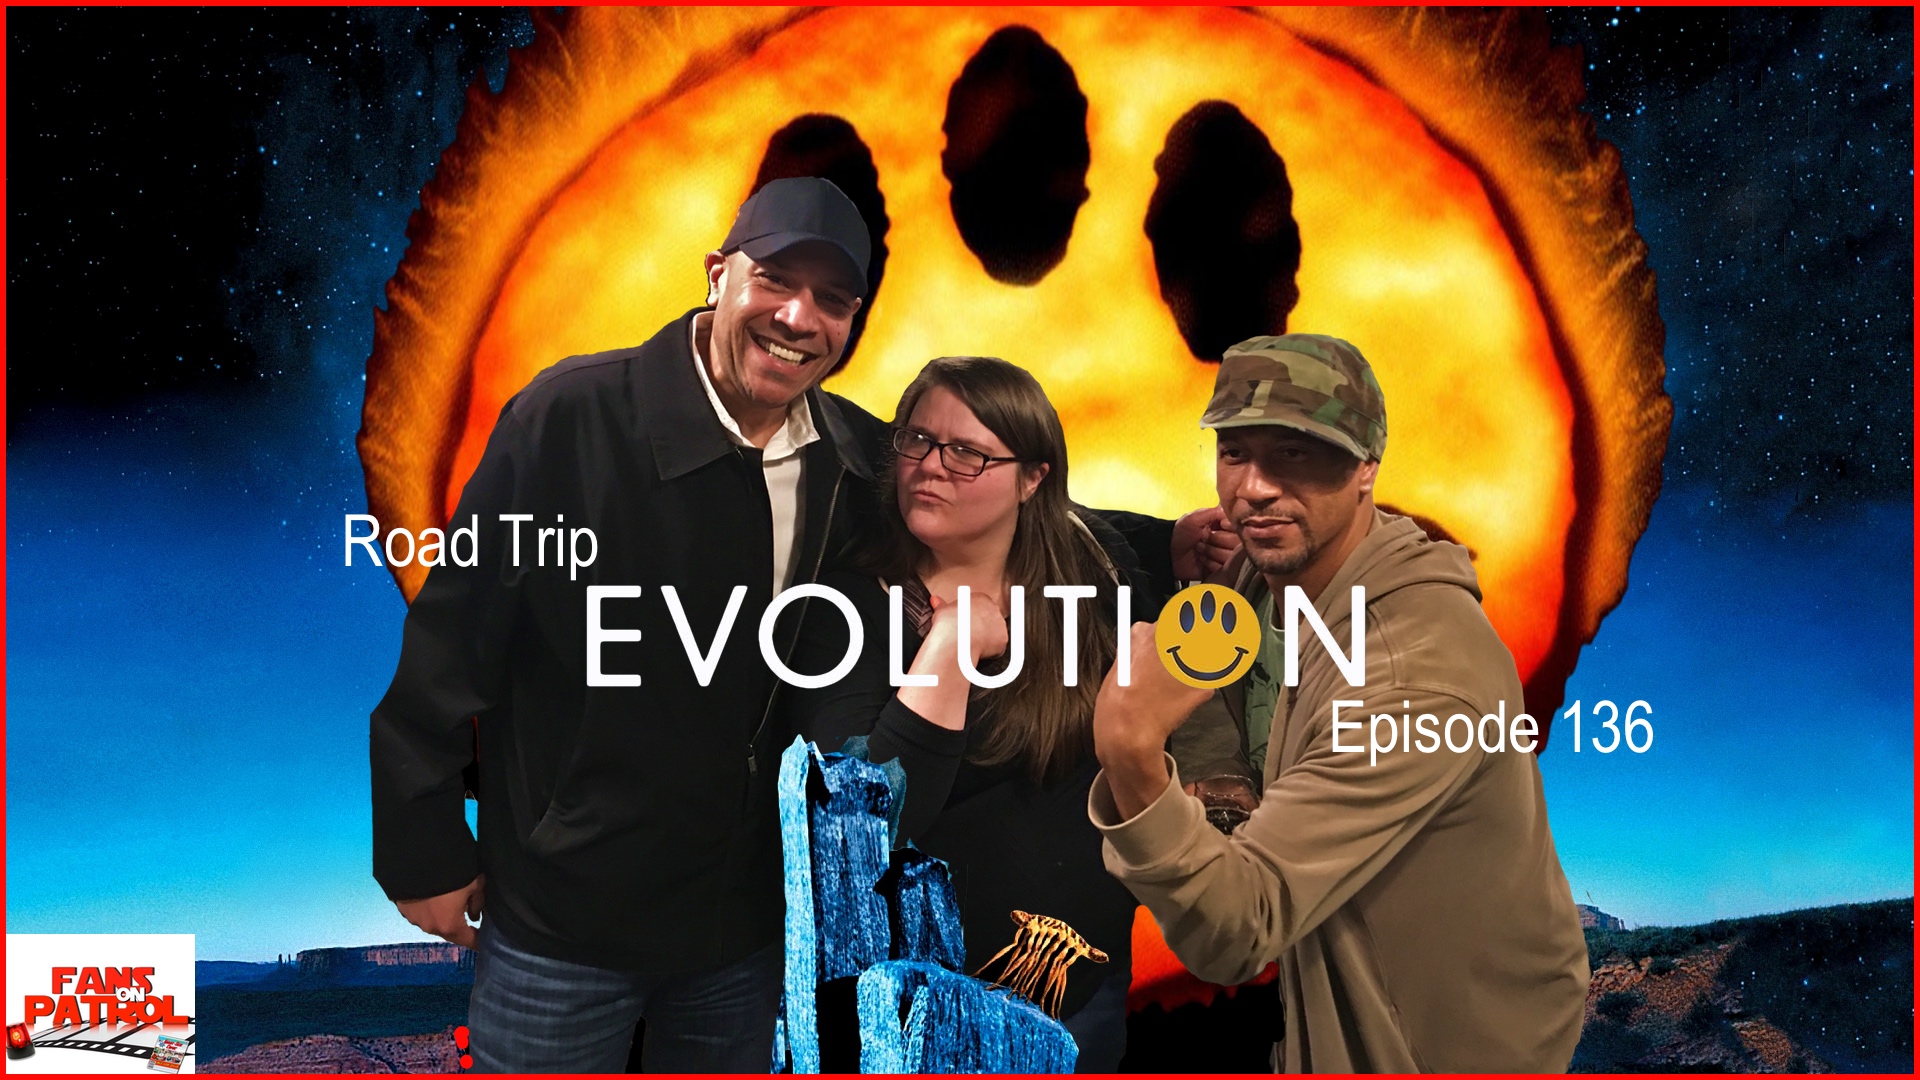 Road Trip Evolution Episode 136